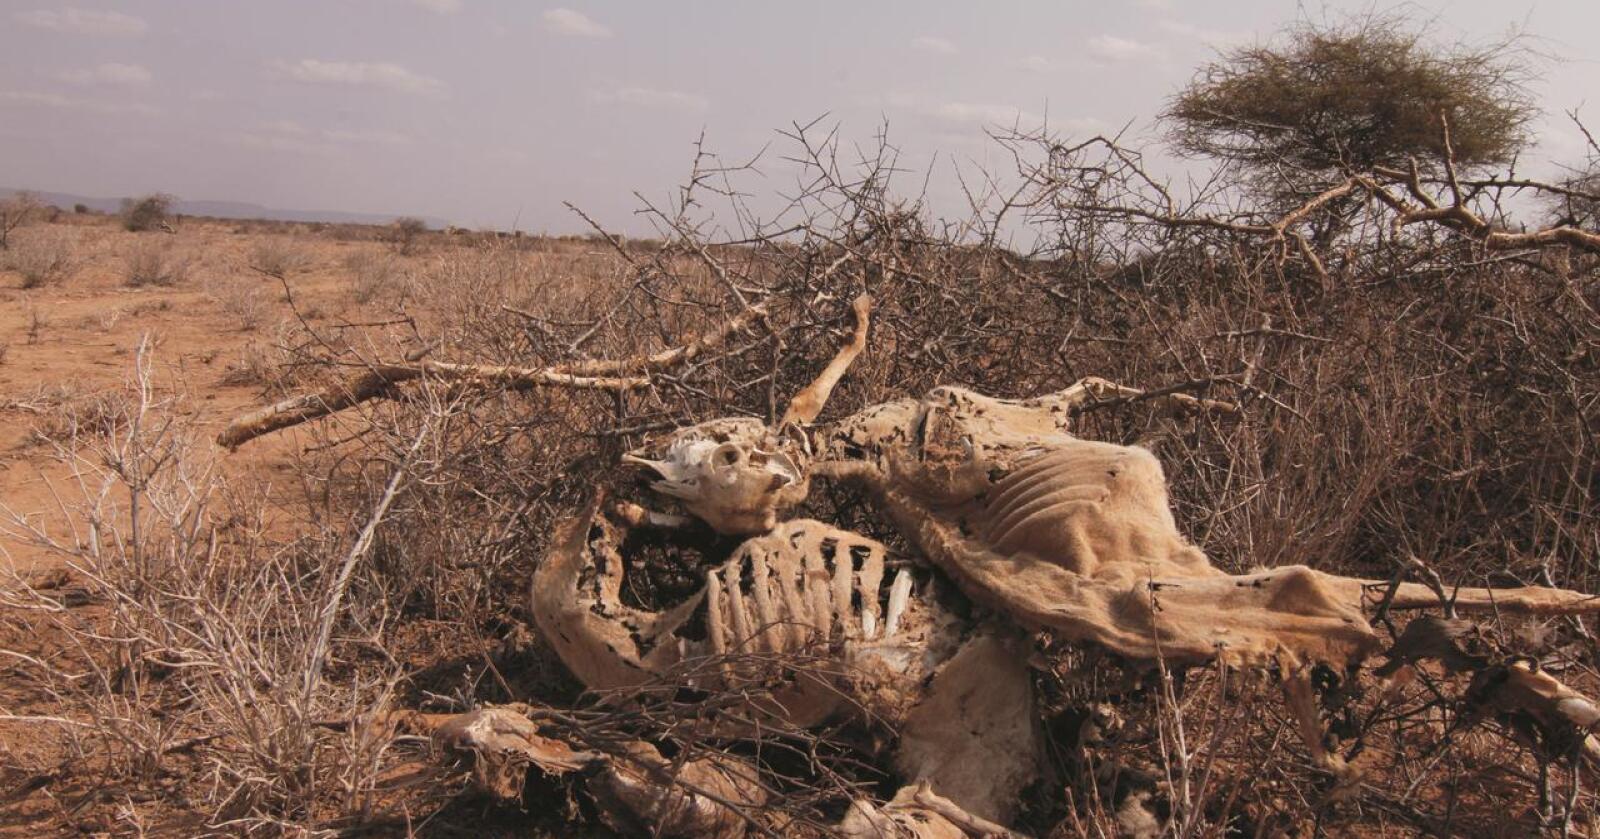 Tørke i Kenya: FNs nødhjelpskontor (OCHA) anslår at 3,5 millioner mennesker i områdene rundt Turkanasjøen ikke har nok mat. Bildet er fra en tidligere tørke- og sultkatastrofe i Kenya. (Foto: Laurie MacGregor)